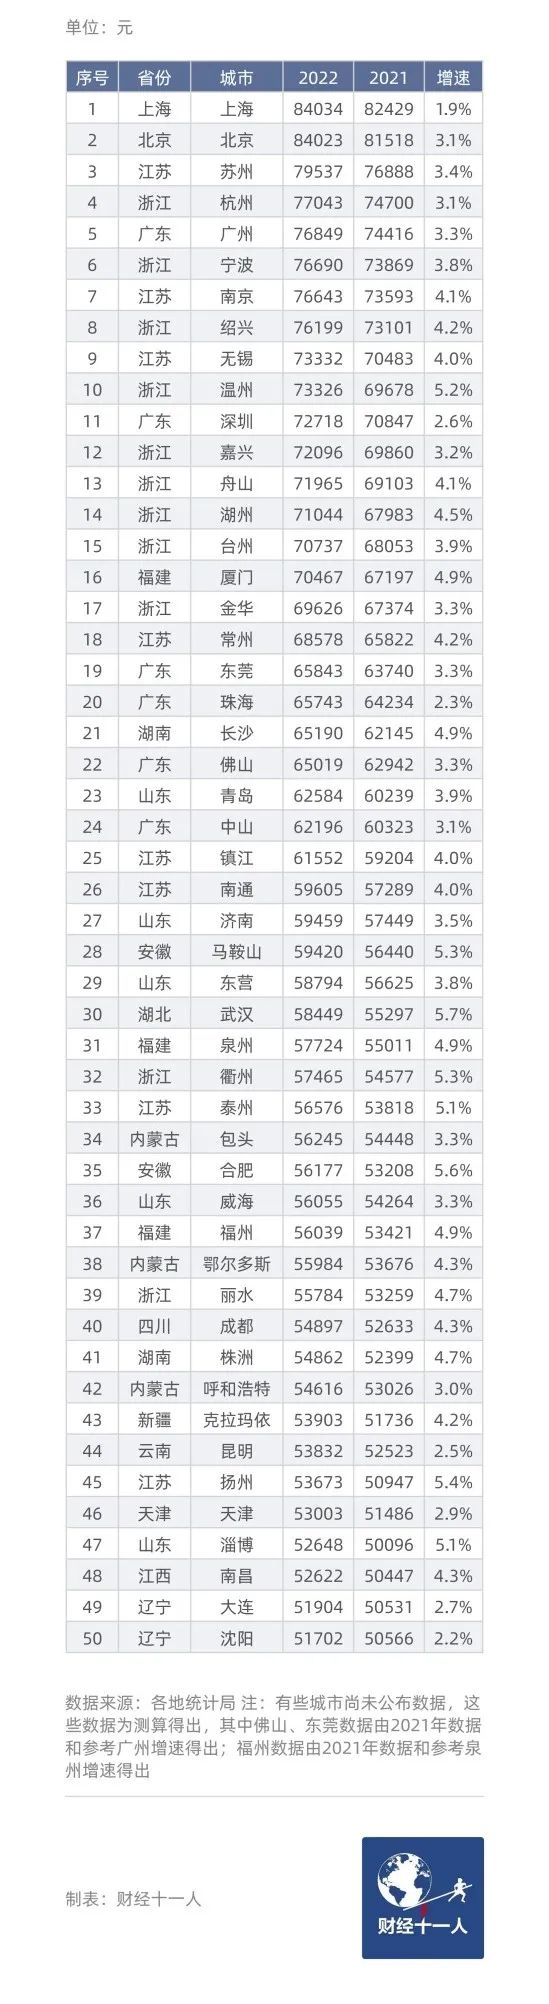 有你在的城市吗？中国“民富”50城：沪京苏杭位列前4 长三角仍是最富庶地区